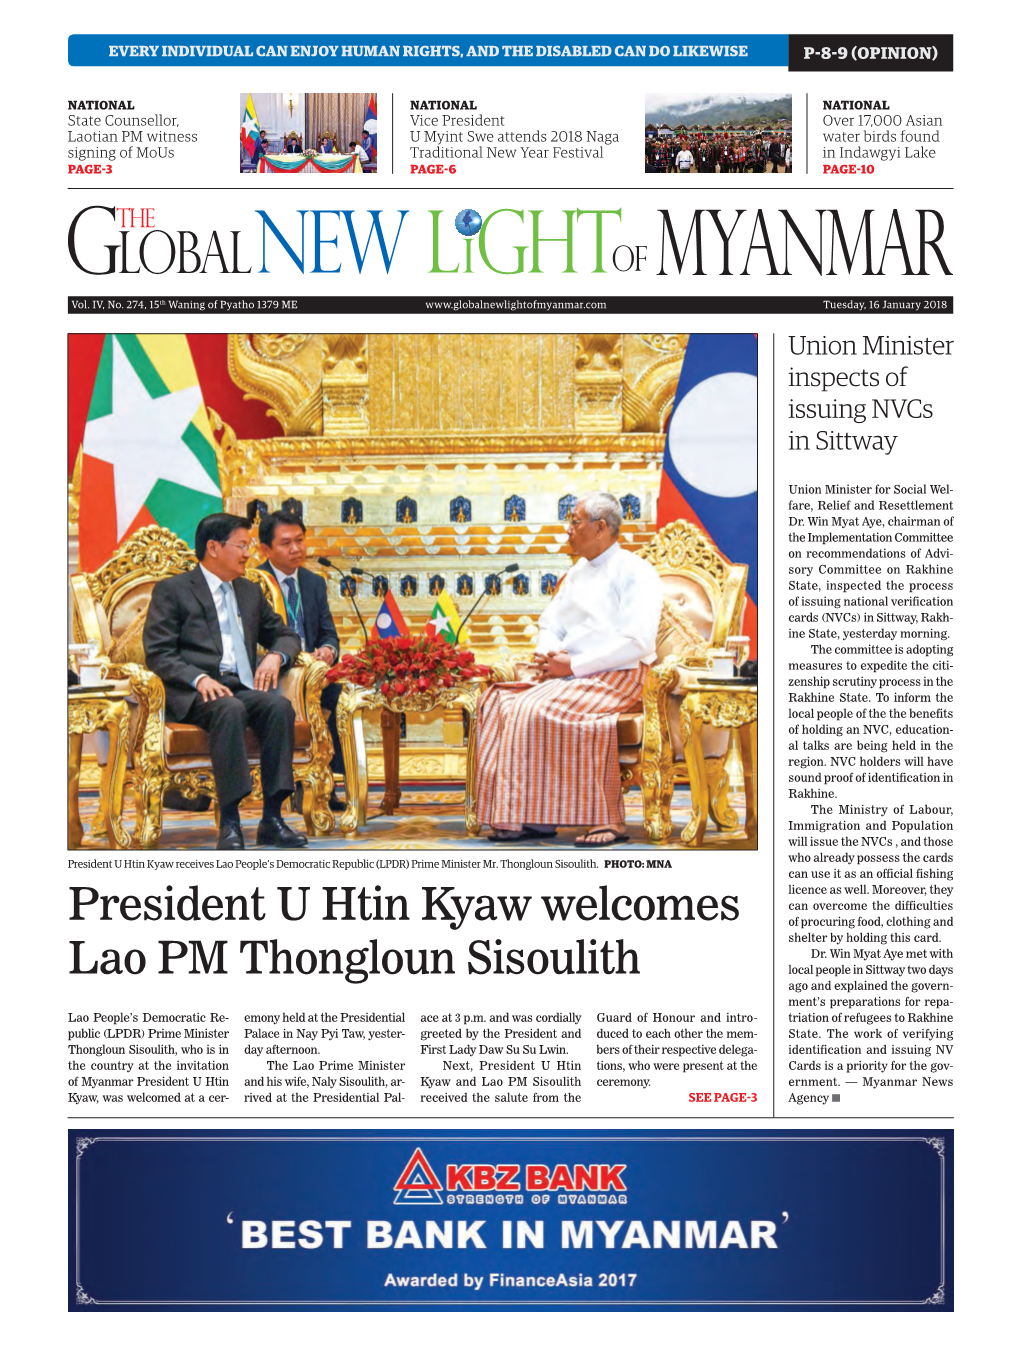 President U Htin Kyaw Welcomes Lao PM Thongloun Sisoulith